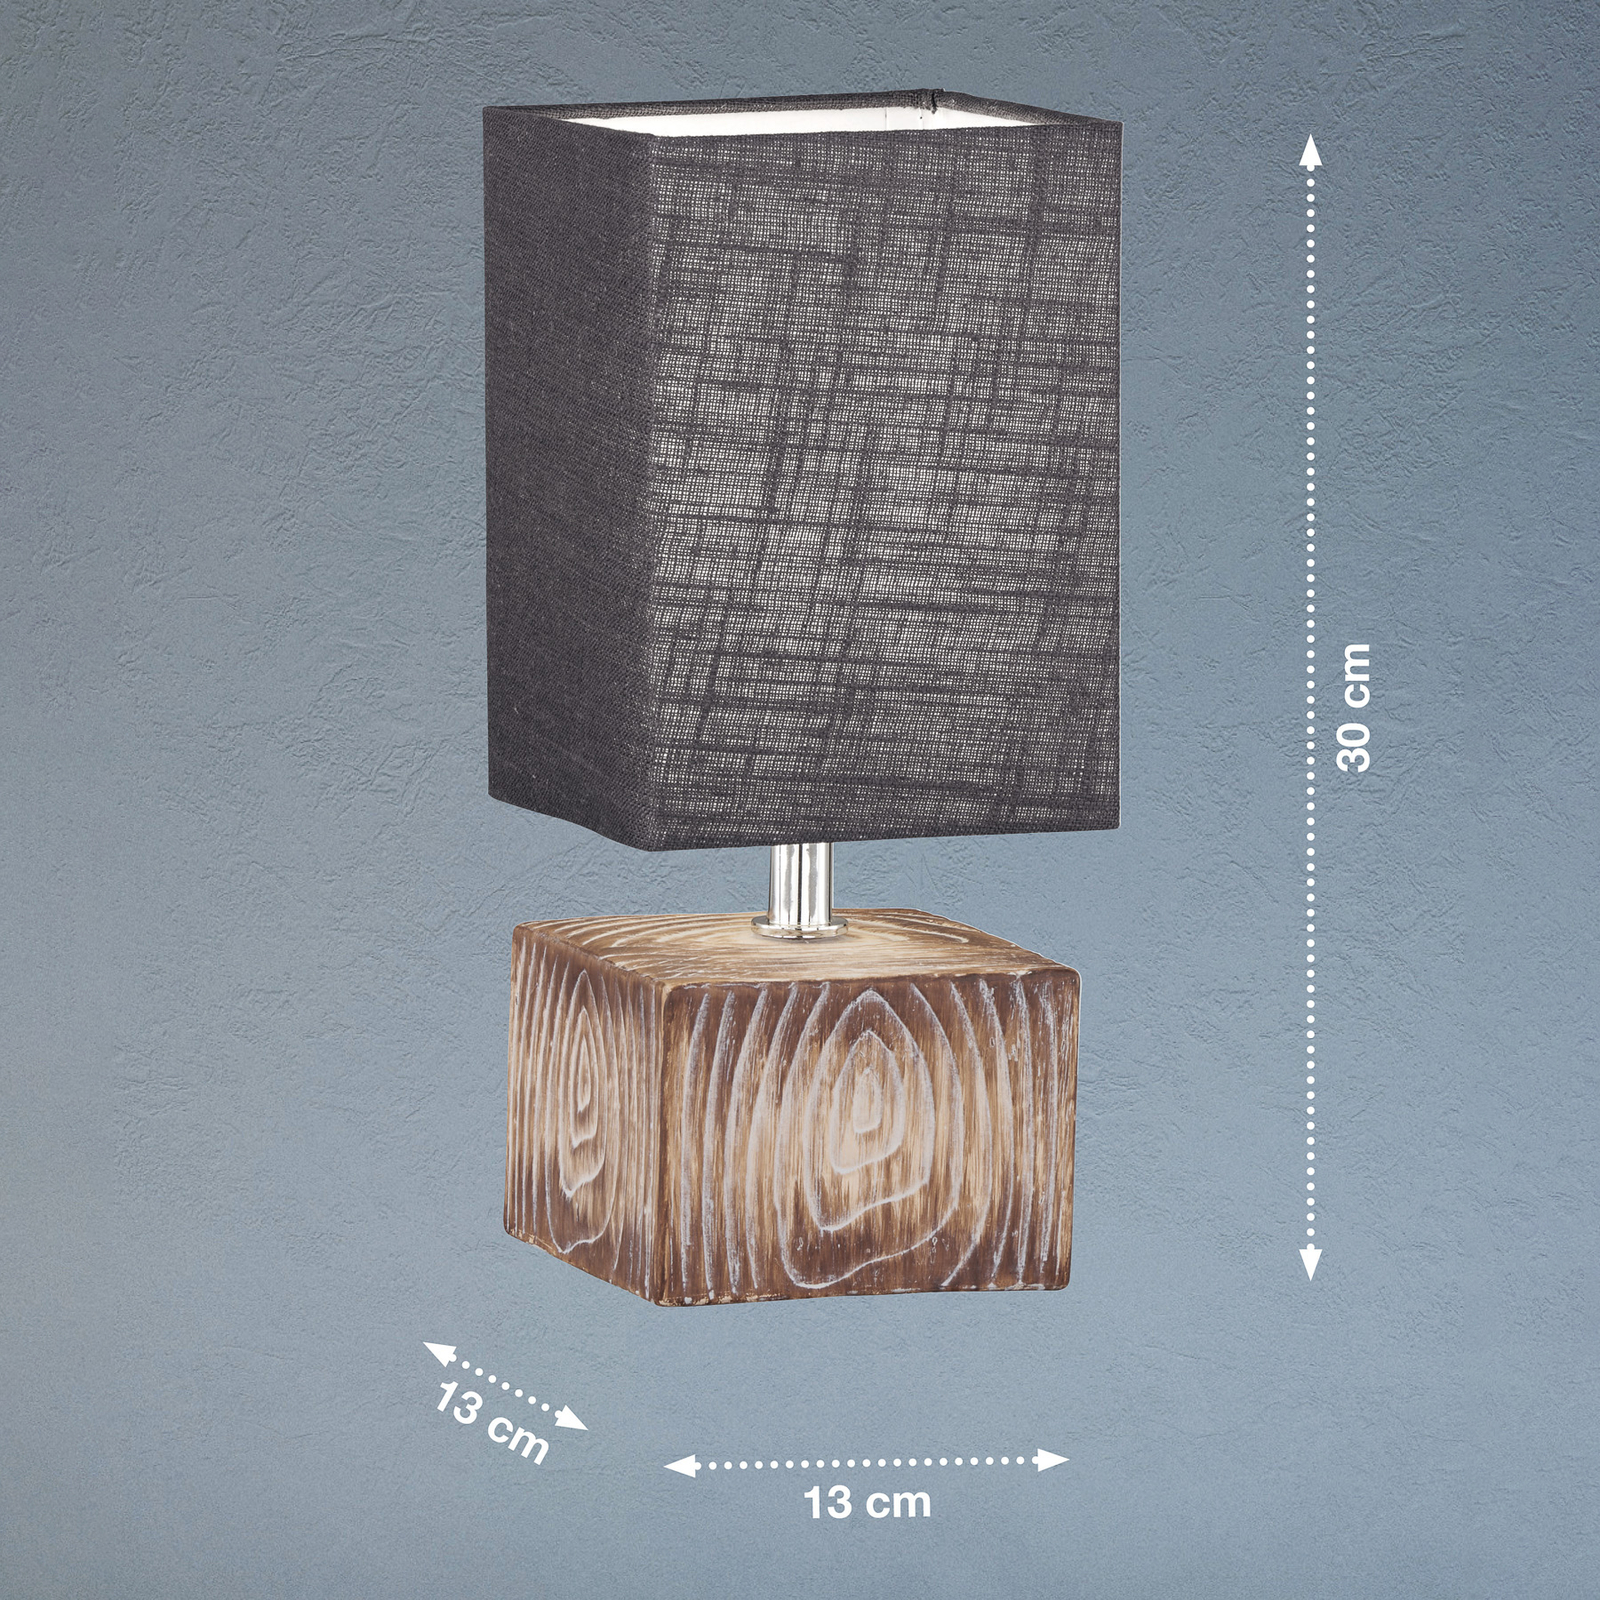 Tafellamp Hauke met linnen kap 13x13 cm